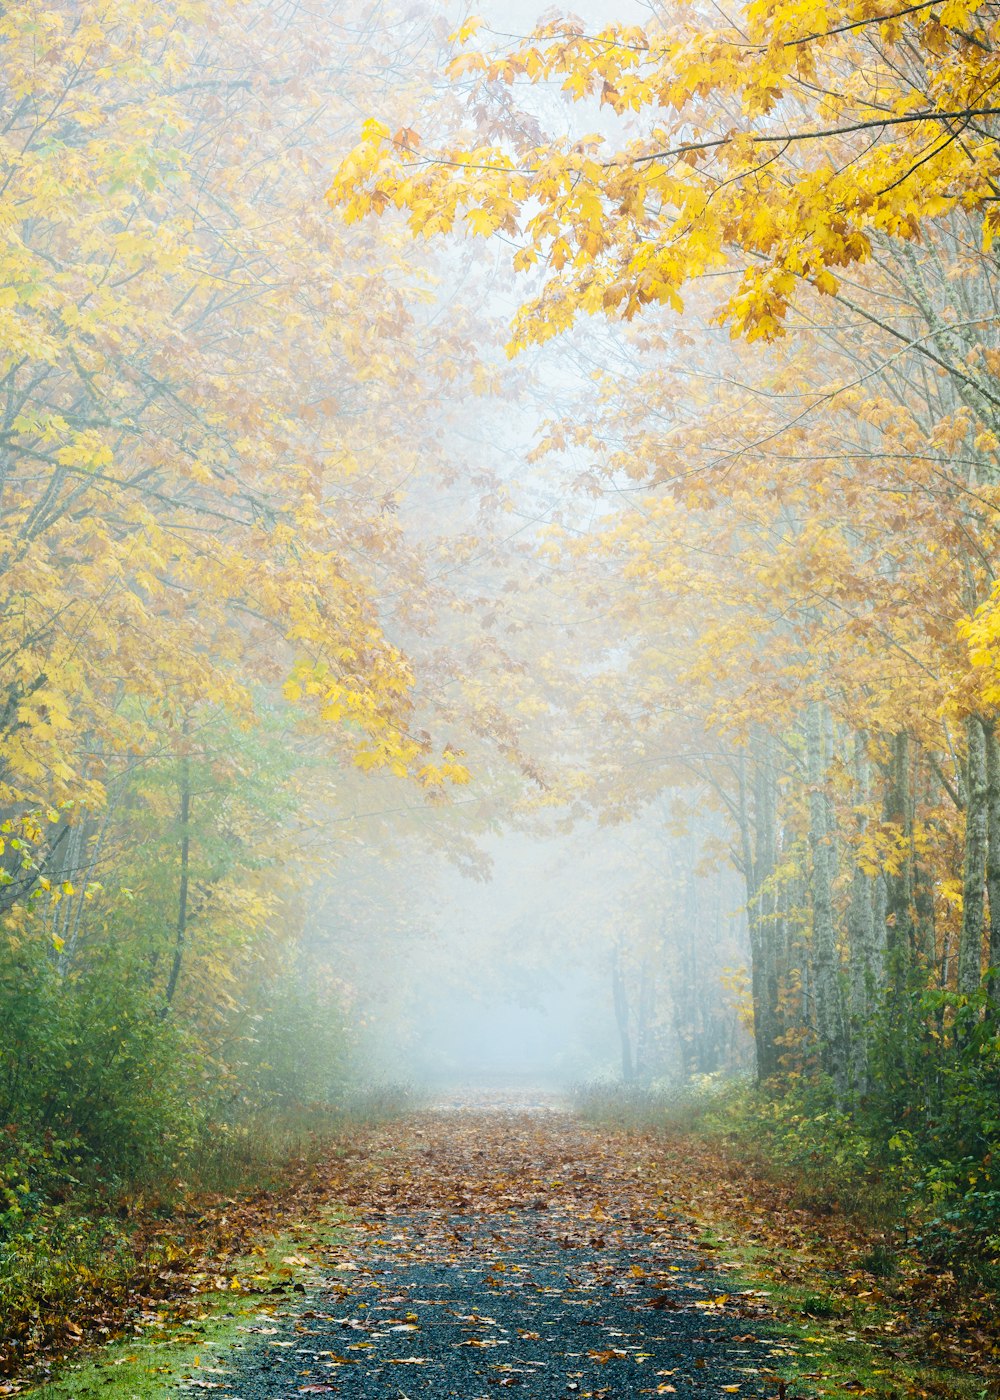 Carretera gris rodeada de árboles de hojas amarillas